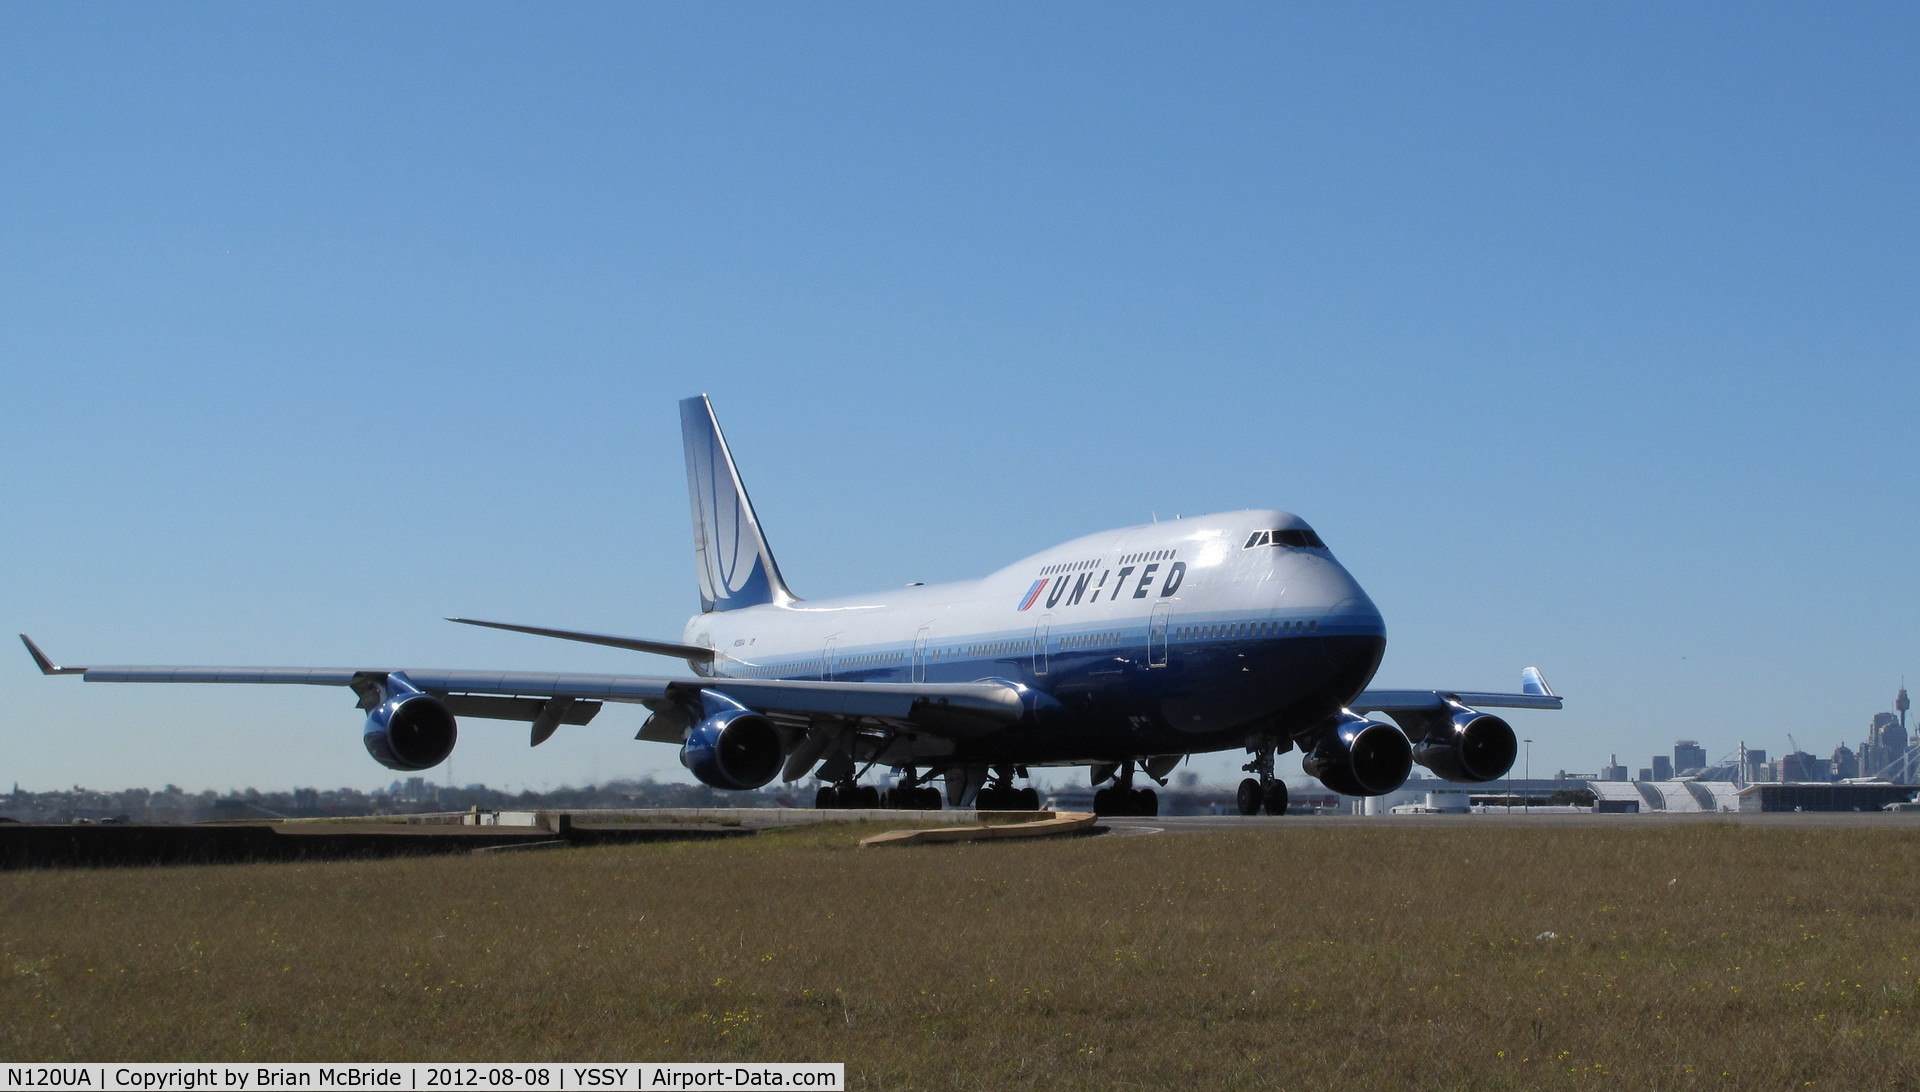 N120UA, 1999 Boeing 747-422 C/N 29166, United Airlines. 747-422. N120UA cn 29166 1209. Sydney - Kingsford Smith International (Mascot) (SYD YSSY). Image © Brian McBride. 08 August 2012